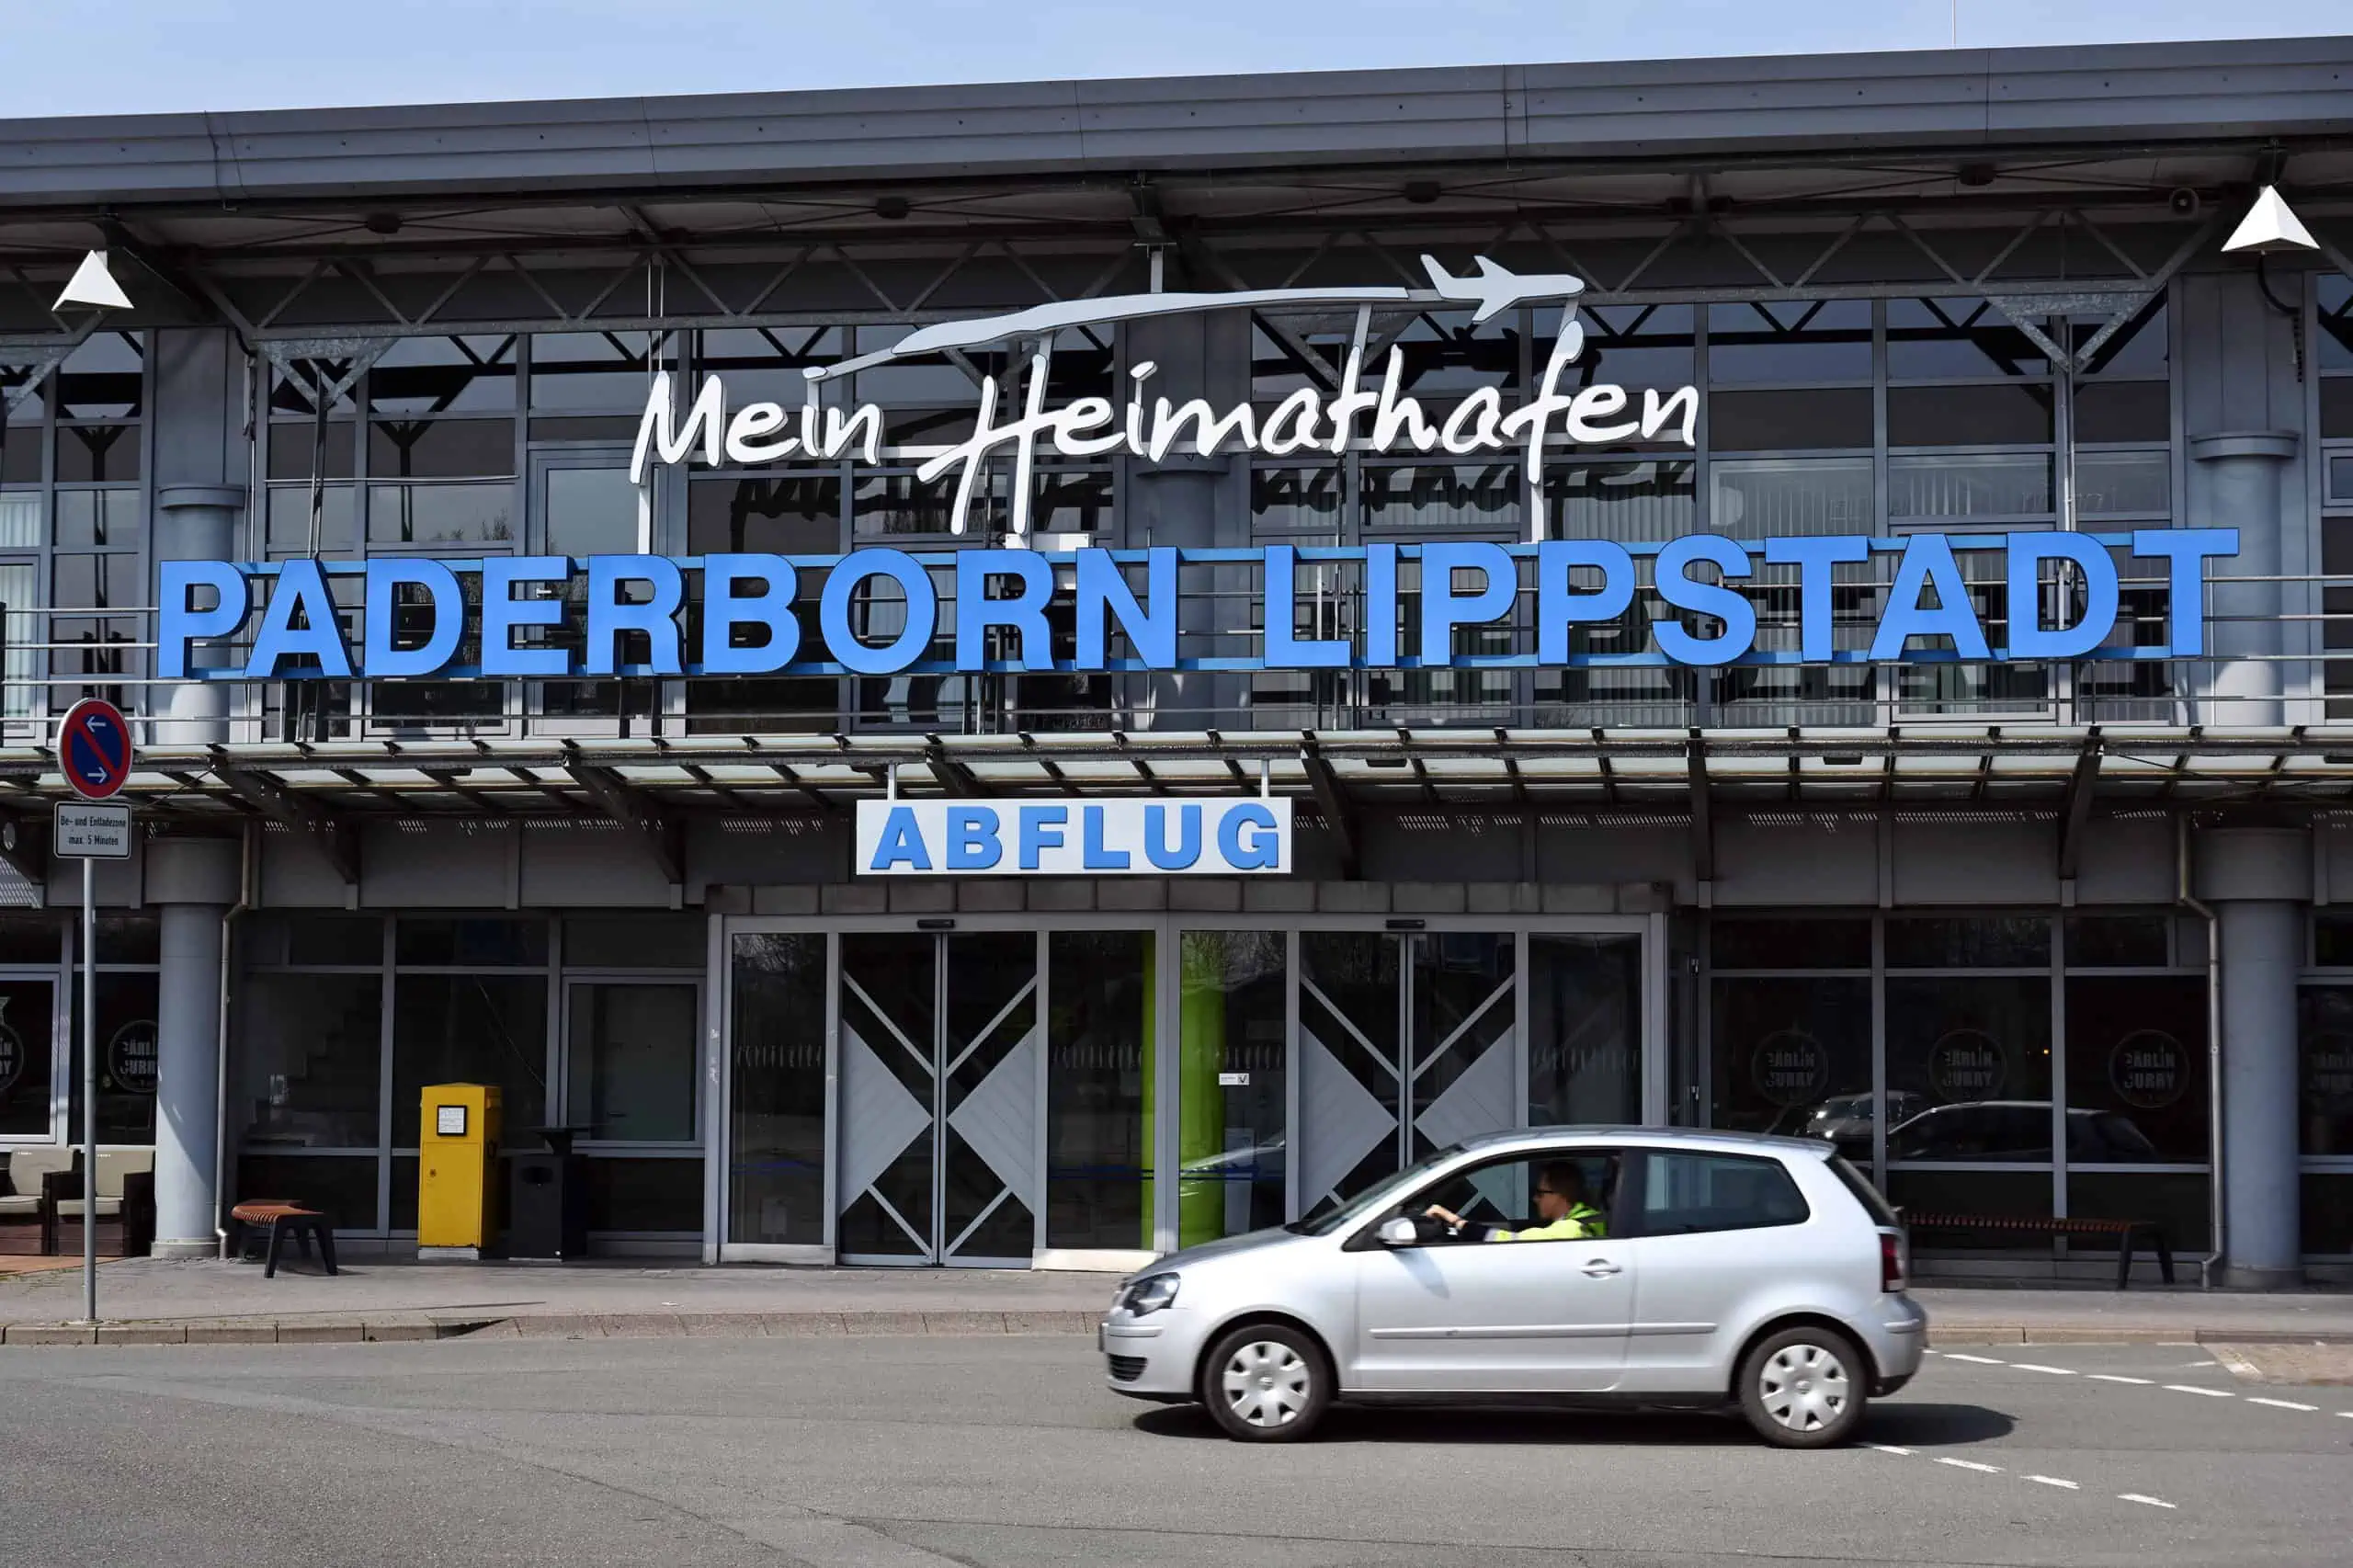 Der Paderborn-Lippstadt Airport: Rund um die Uhr an 365 Tagen geöffnet.